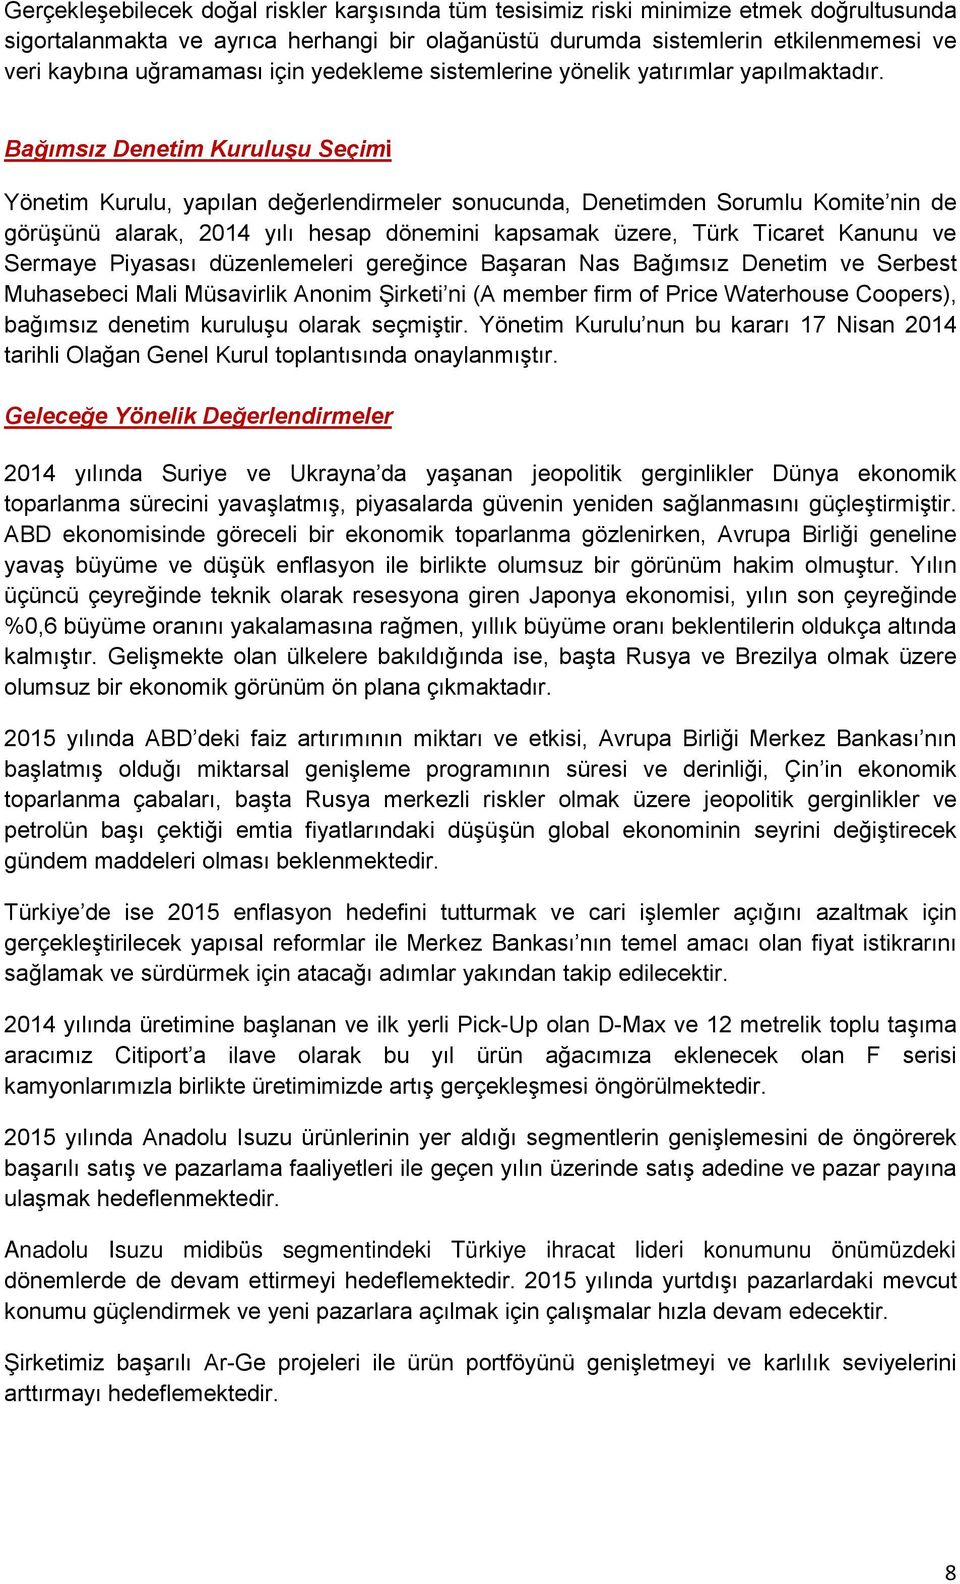 Bağımsız Denetim Kuruluşu Seçimi Yönetim Kurulu, yapılan değerlendirmeler sonucunda, Denetimden Sorumlu Komite nin de görüşünü alarak, 2014 yılı hesap dönemini kapsamak üzere, Türk Ticaret Kanunu ve